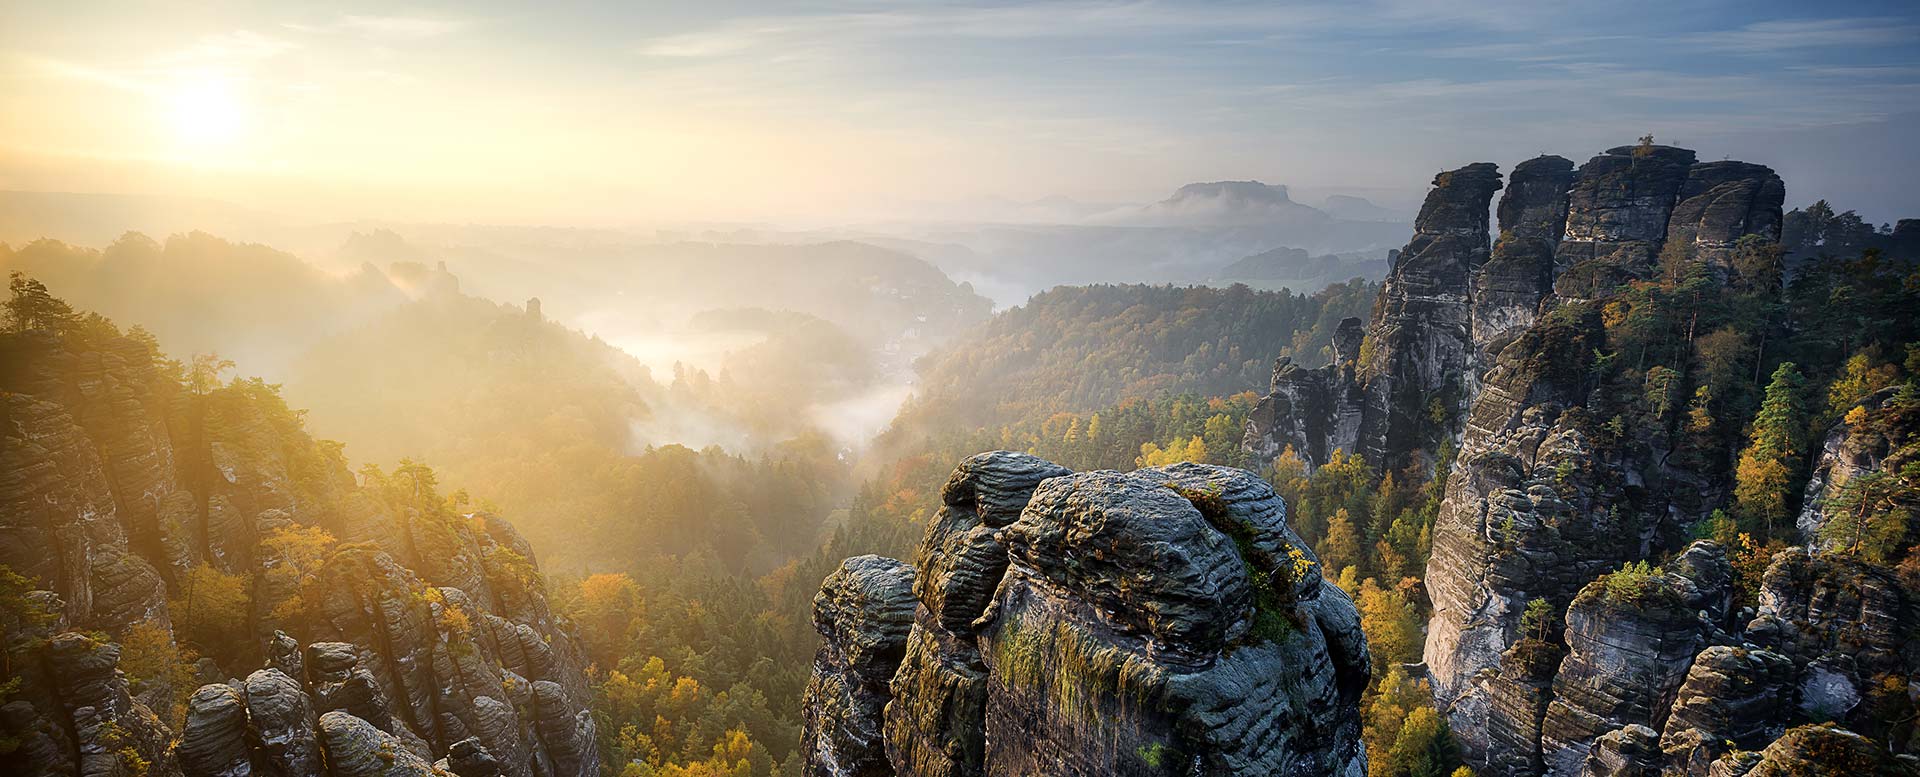 Nationalparks Deutschland - Sächsische Schweiz